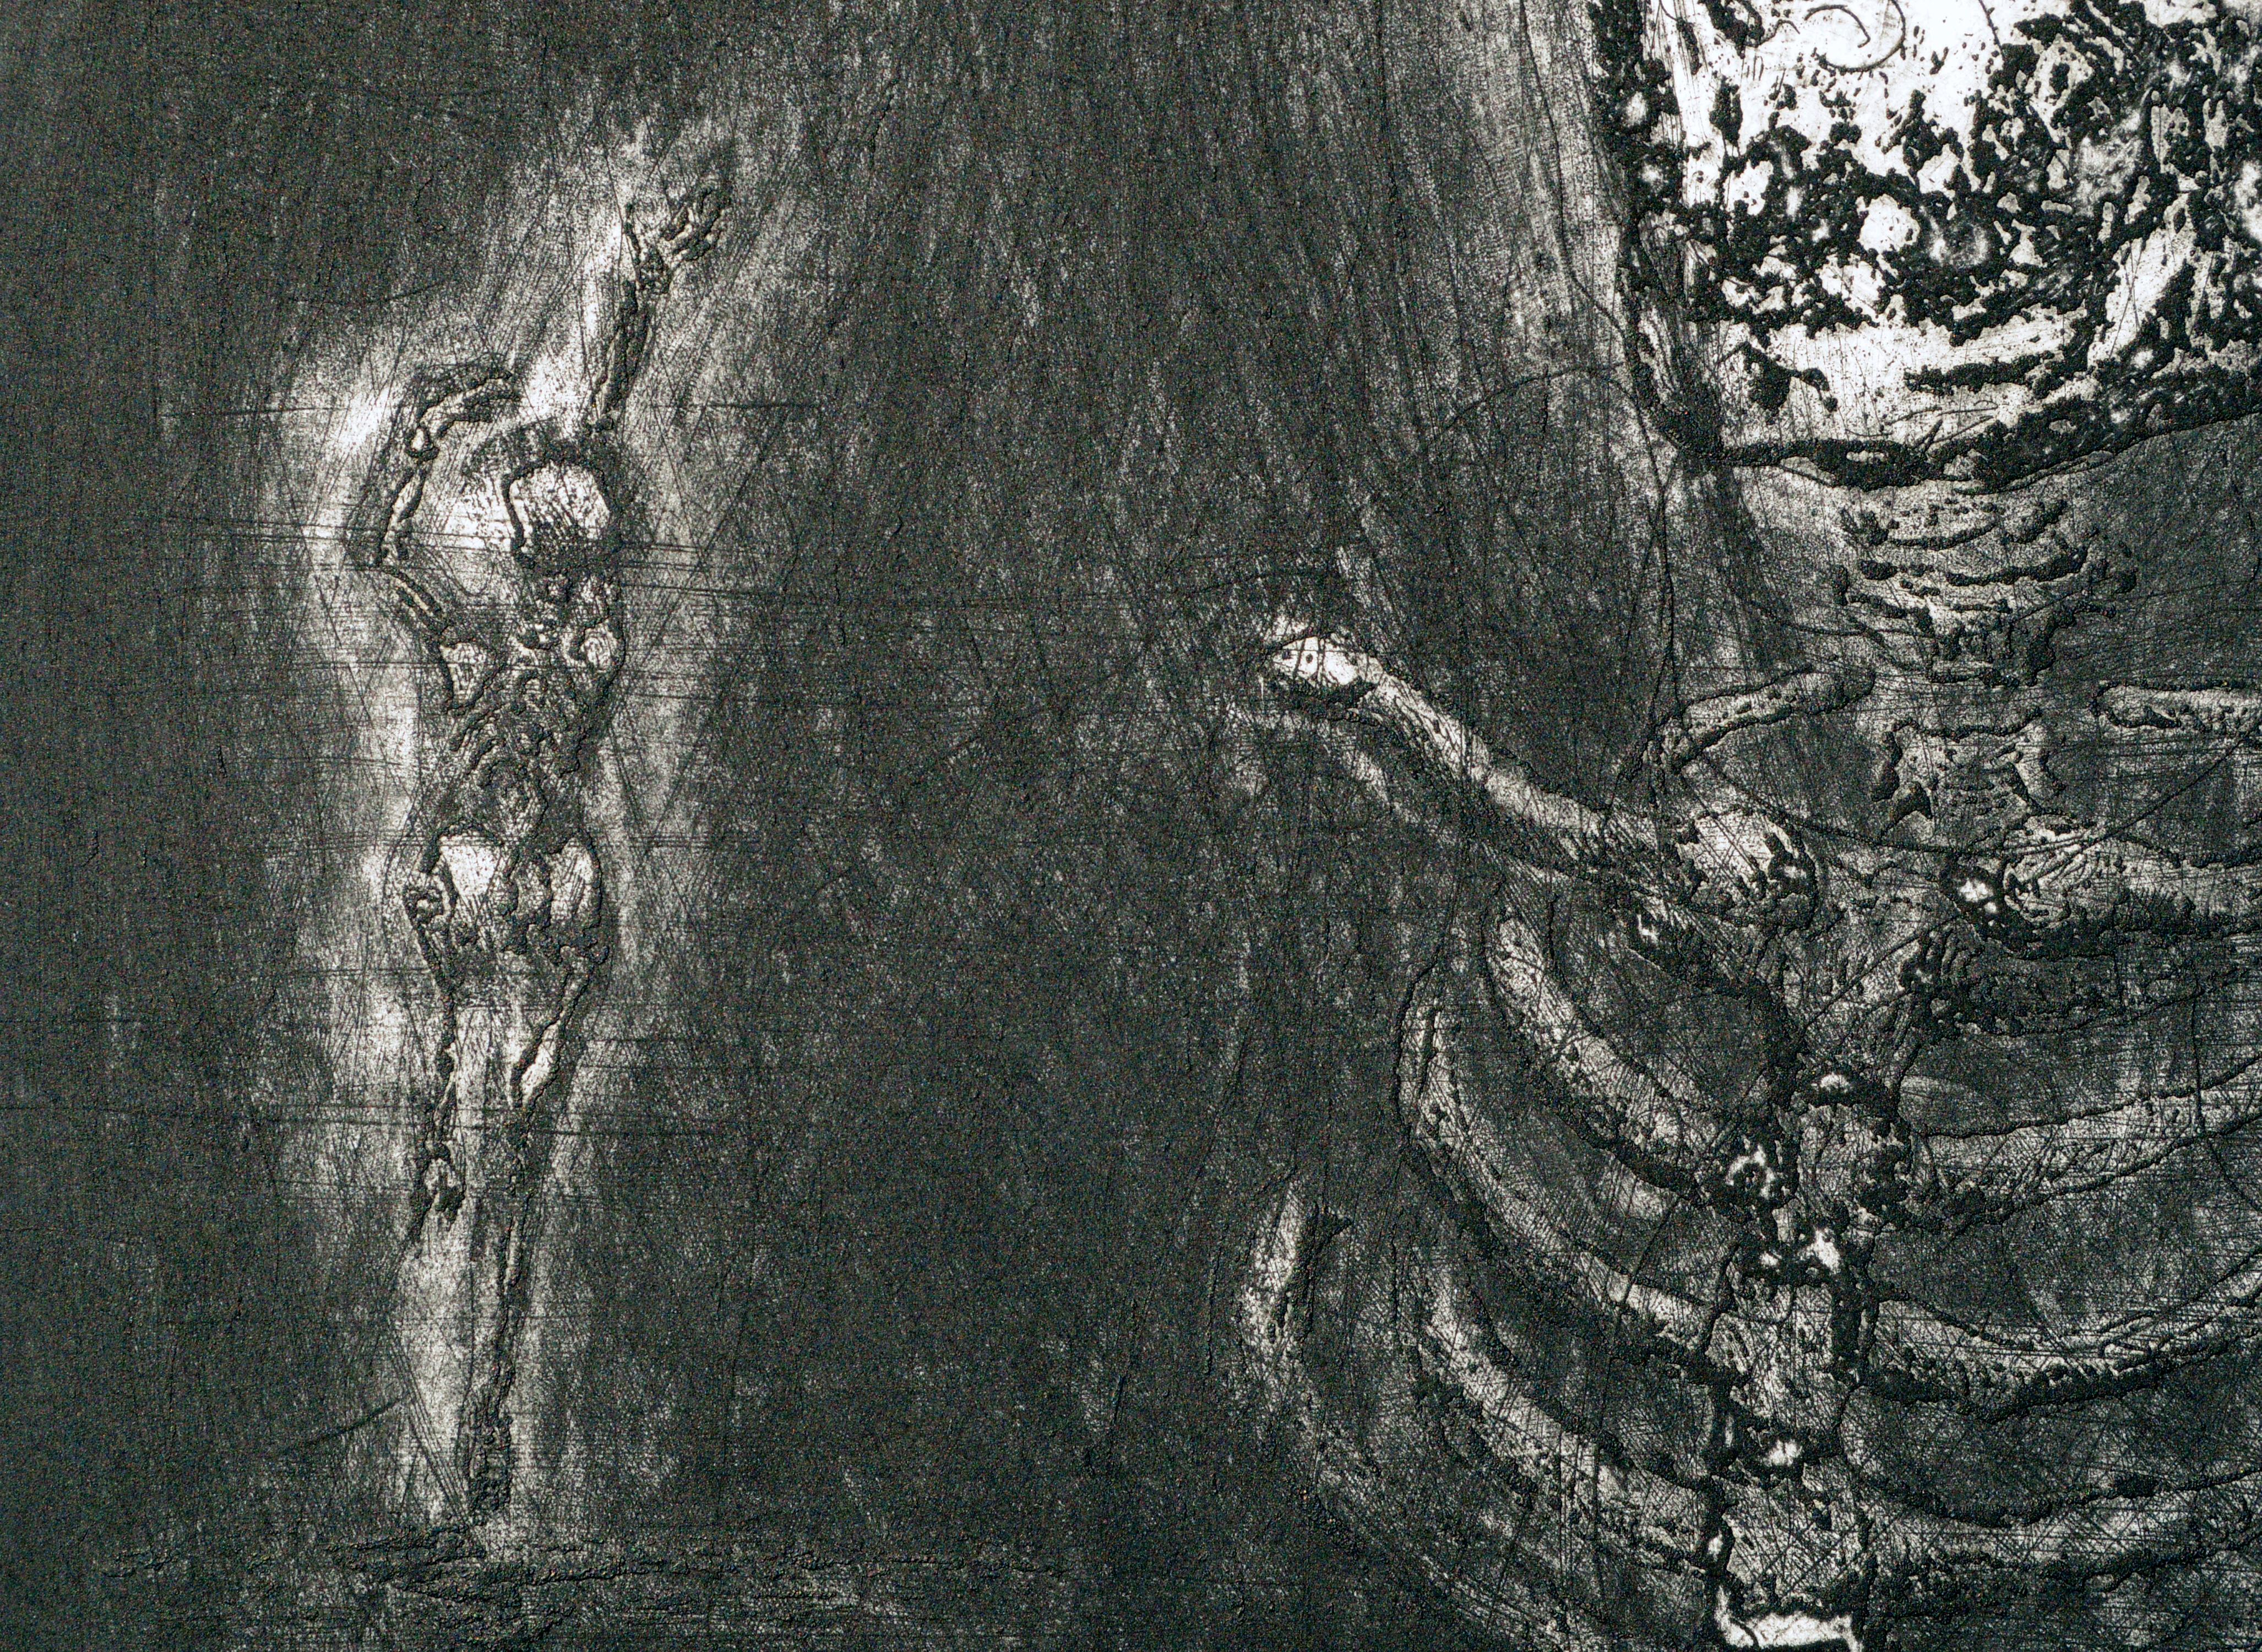 Remarquable lithographie abstraite figurative avec squelette de l'artiste californien I+I Colon (20e siècle). Numérotée, titrée et signée sur le bord inférieur (